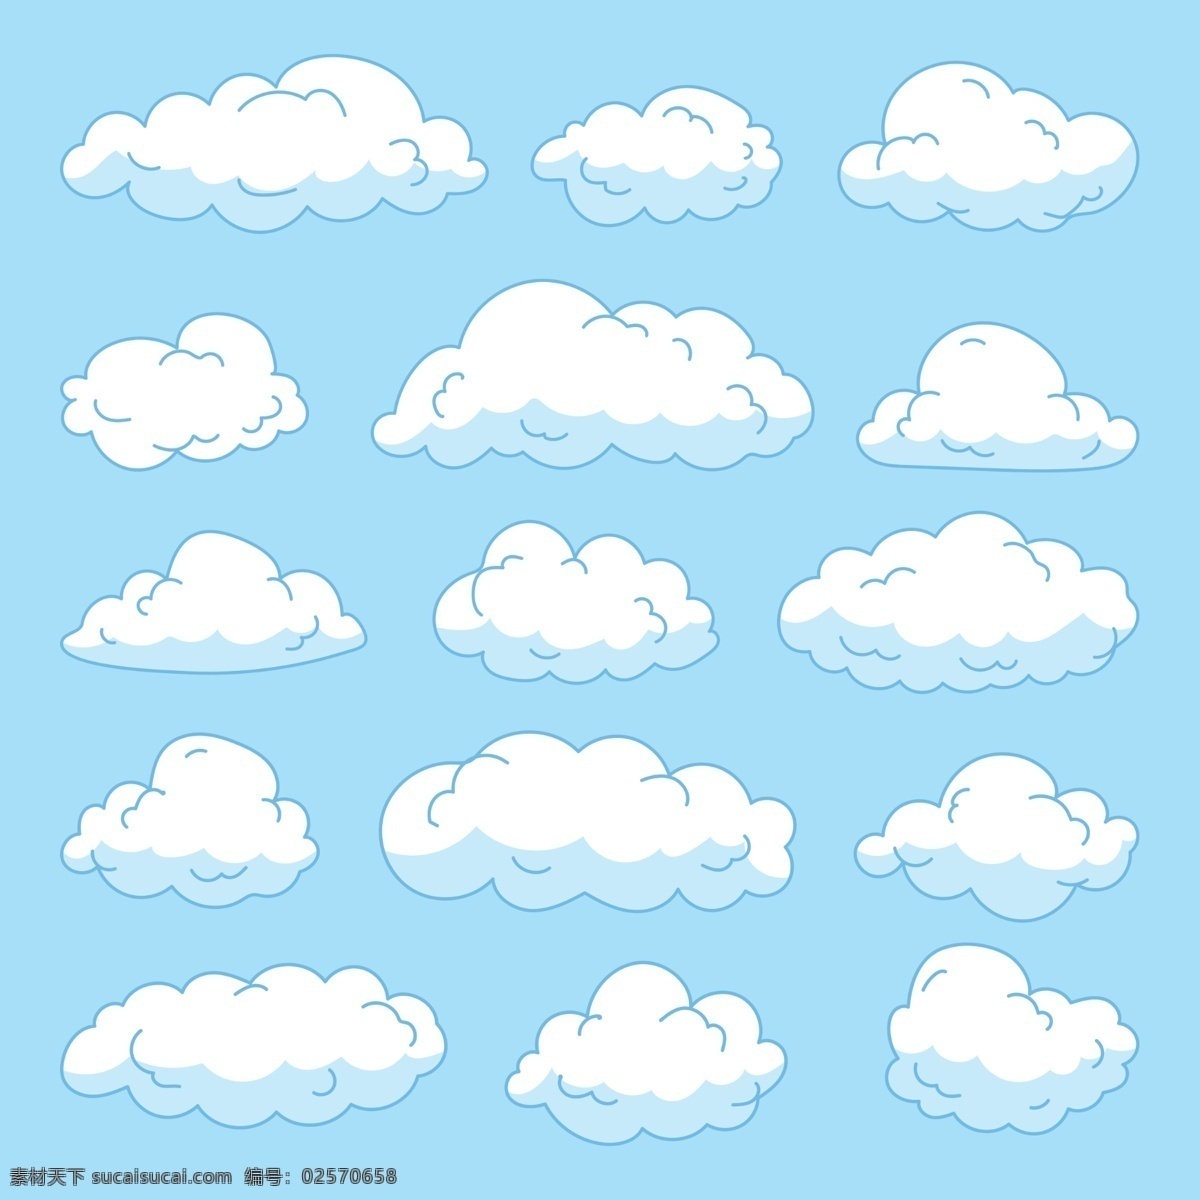 云 云朵 云素材 云朵素材 元素 免抠 天空 白云 矢量云朵 卡通云朵素材 矢量云朵素材